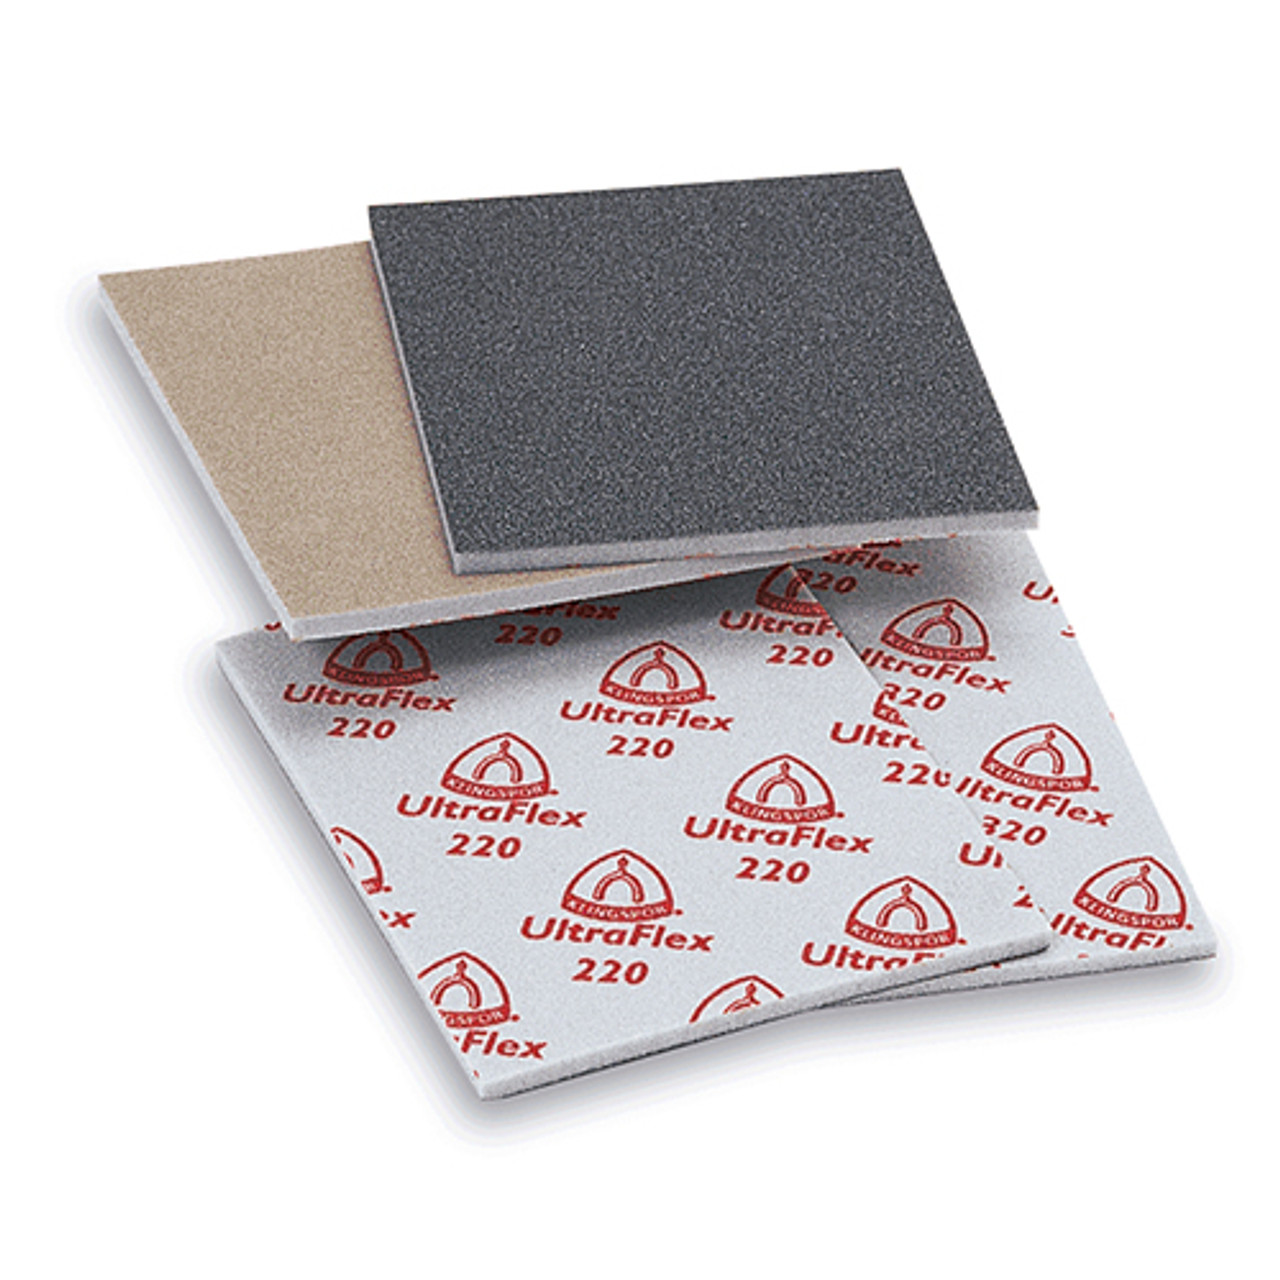 Klingspor Abrasives Aluminum Oxide UltraFlex Sanding Pads, 4.5"X 5.5"X 1/4" Thick, 120 Grit, 10PK